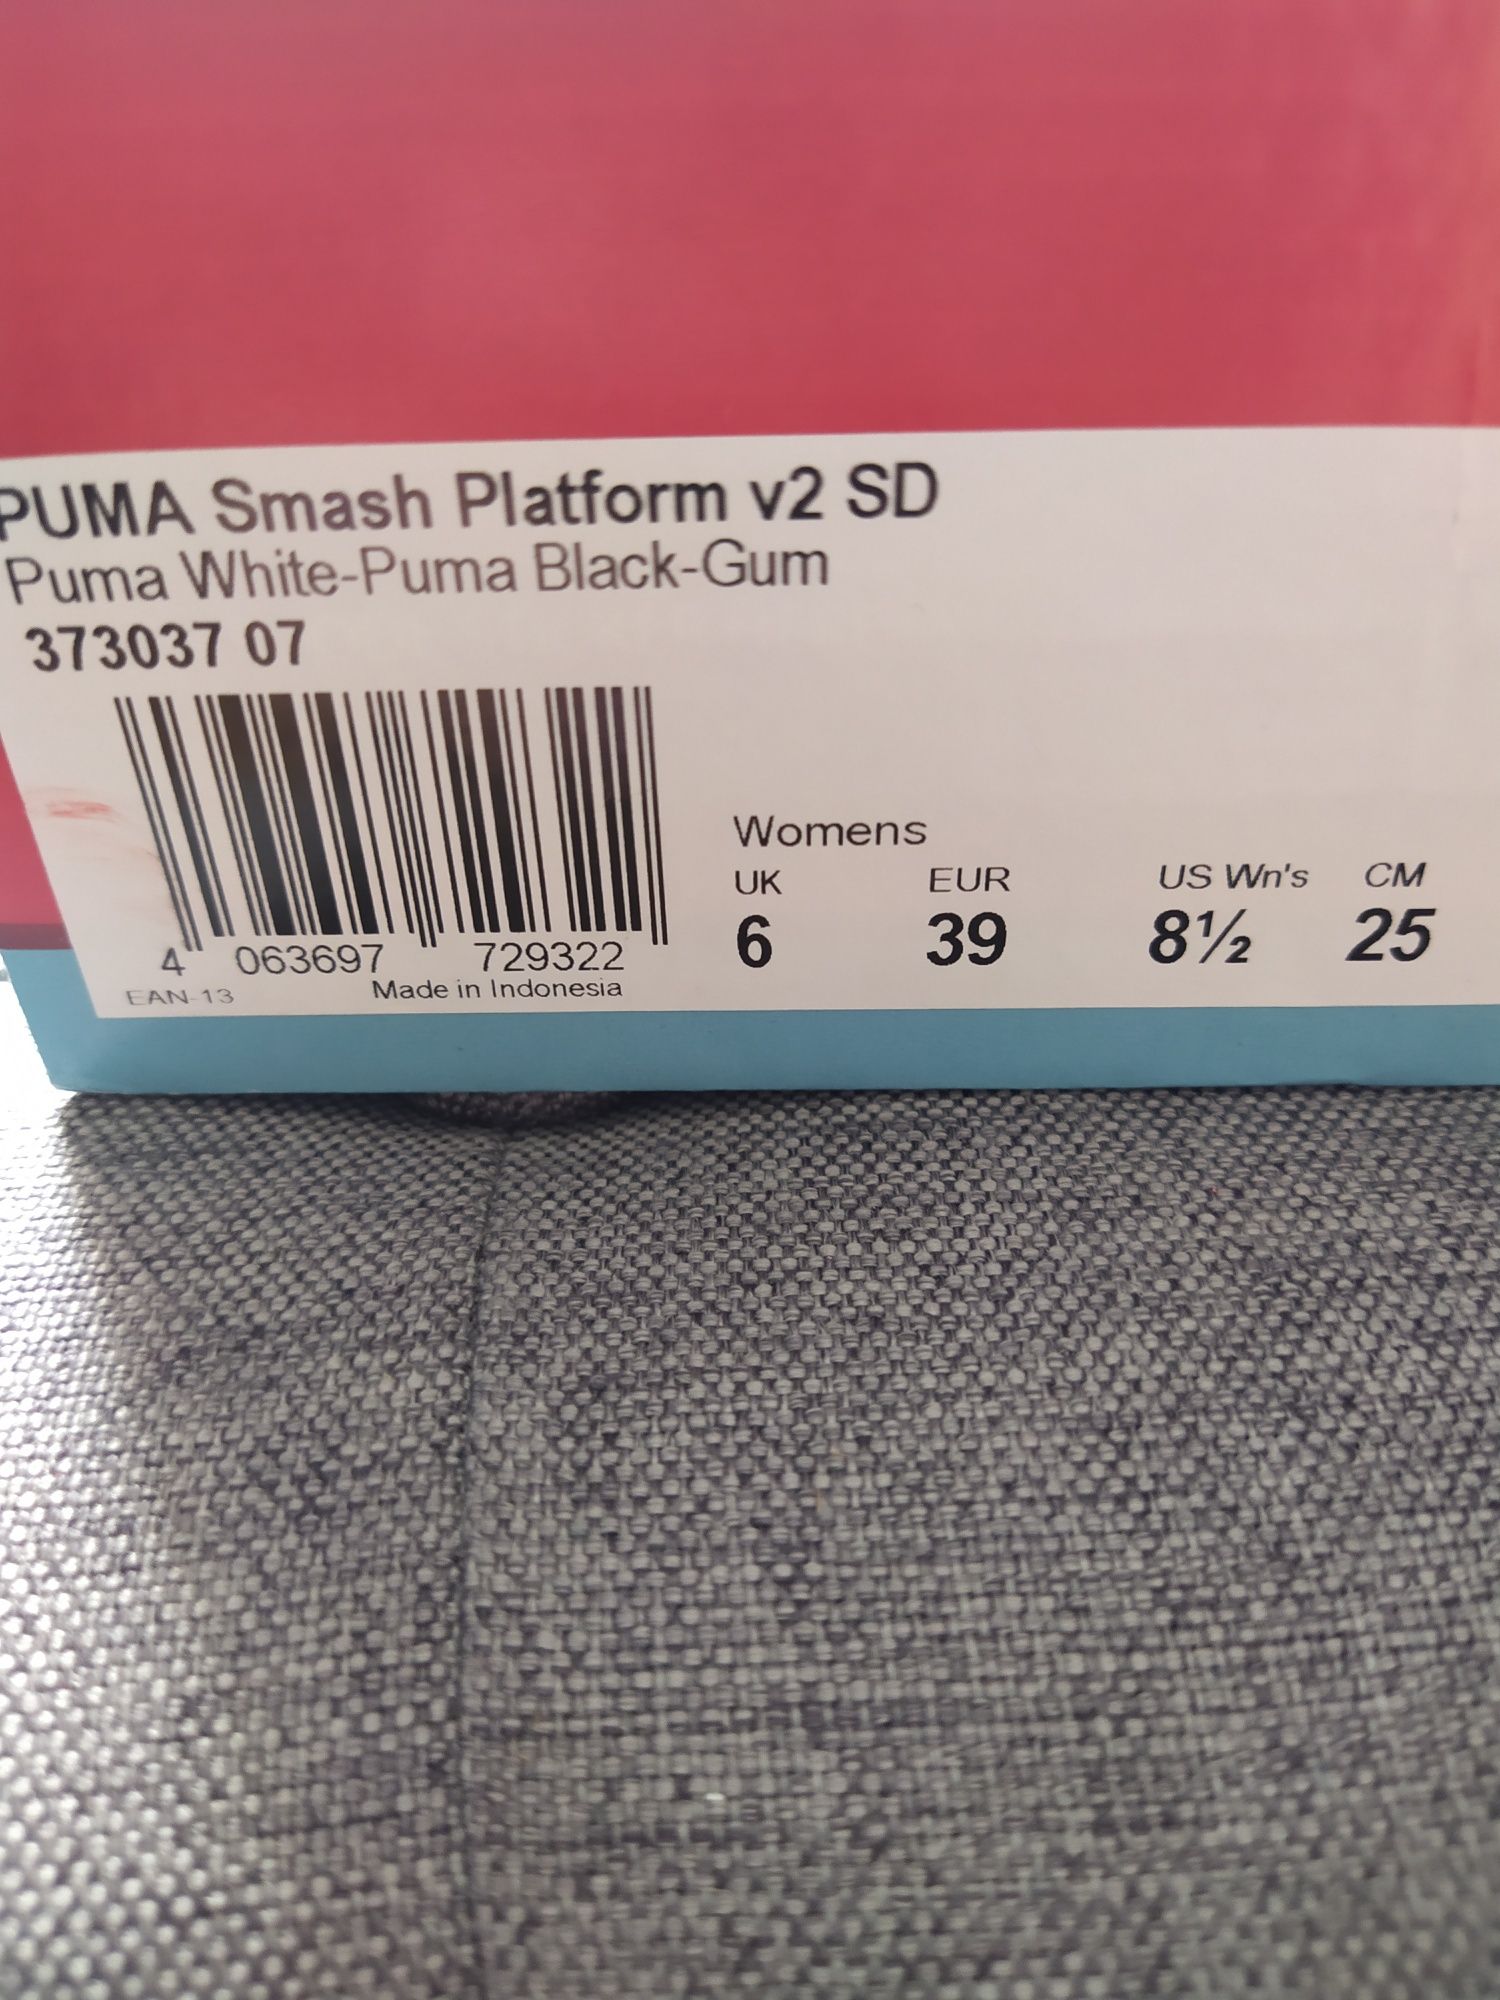 Puma Smash Platform v2